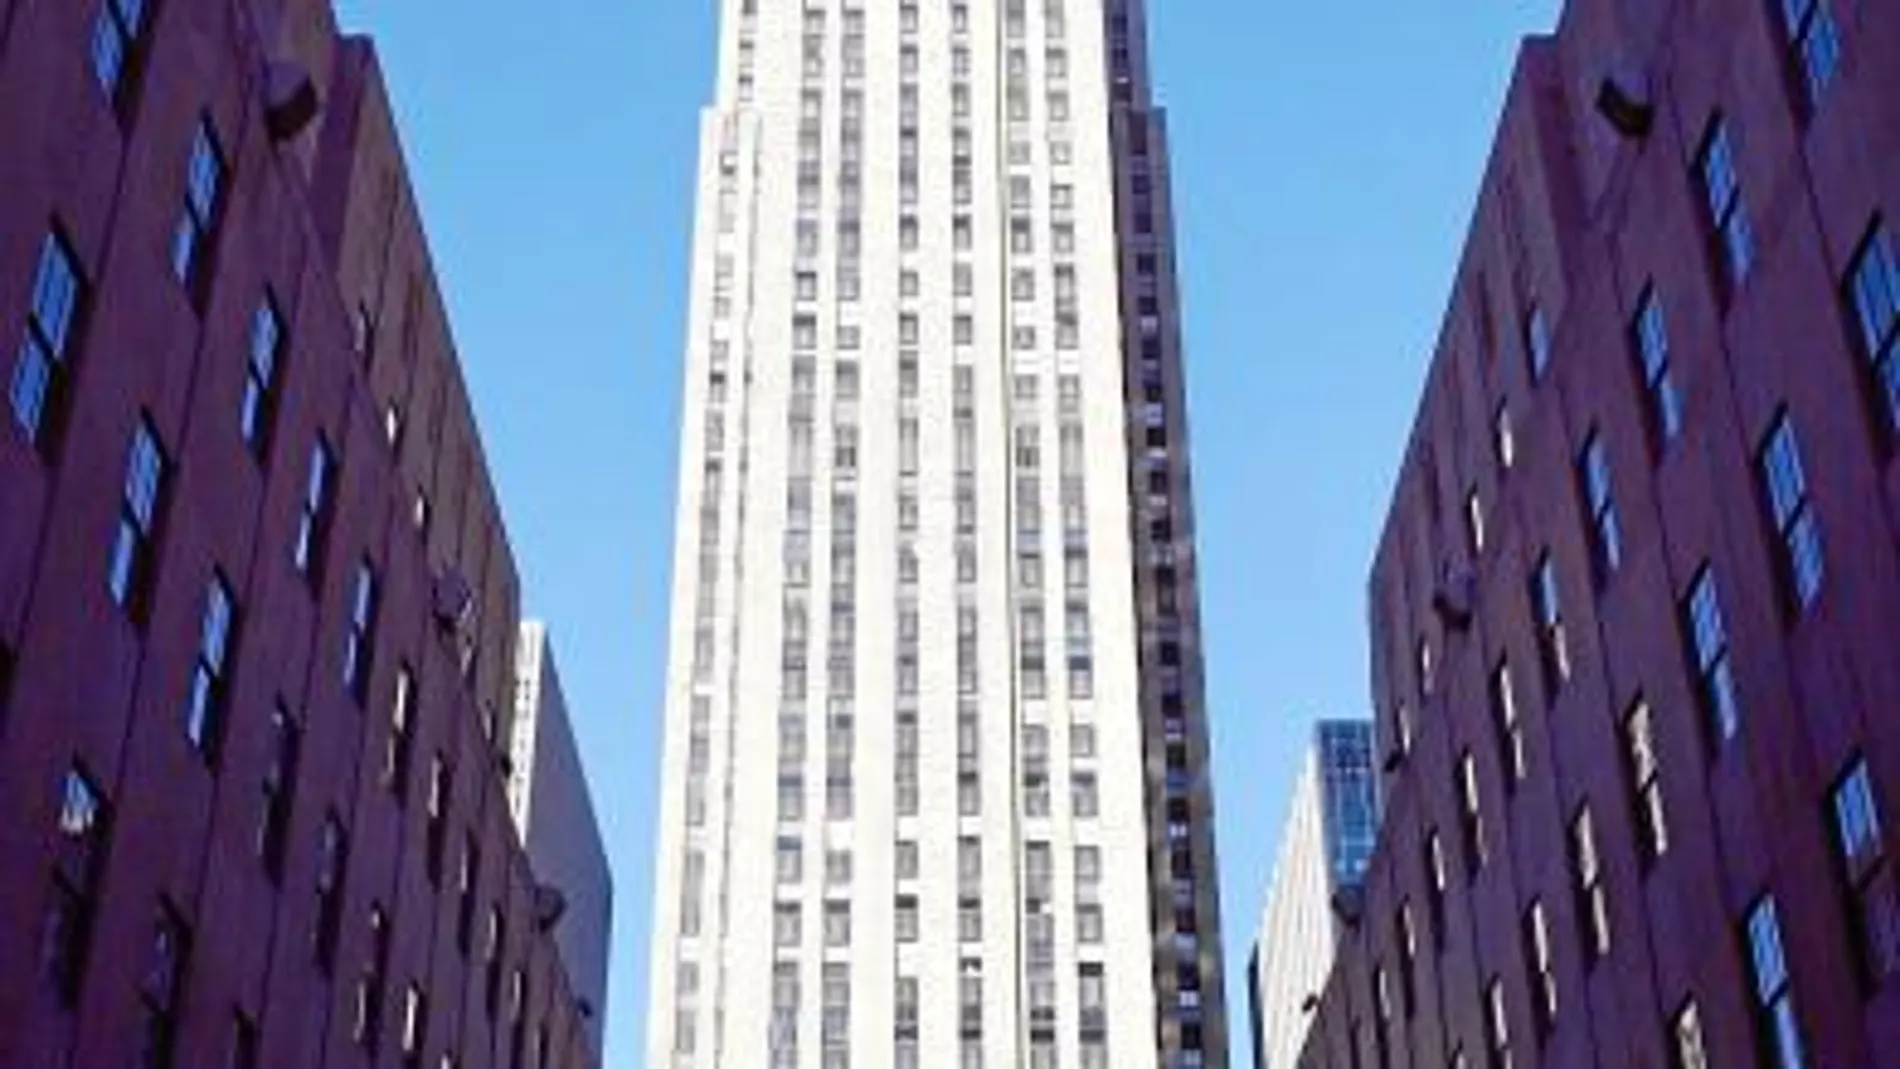 La delegación catalana en Nueva York está ubicada en el Rockefeller Center y el alquiler anual cuesta unos 330.000 euros